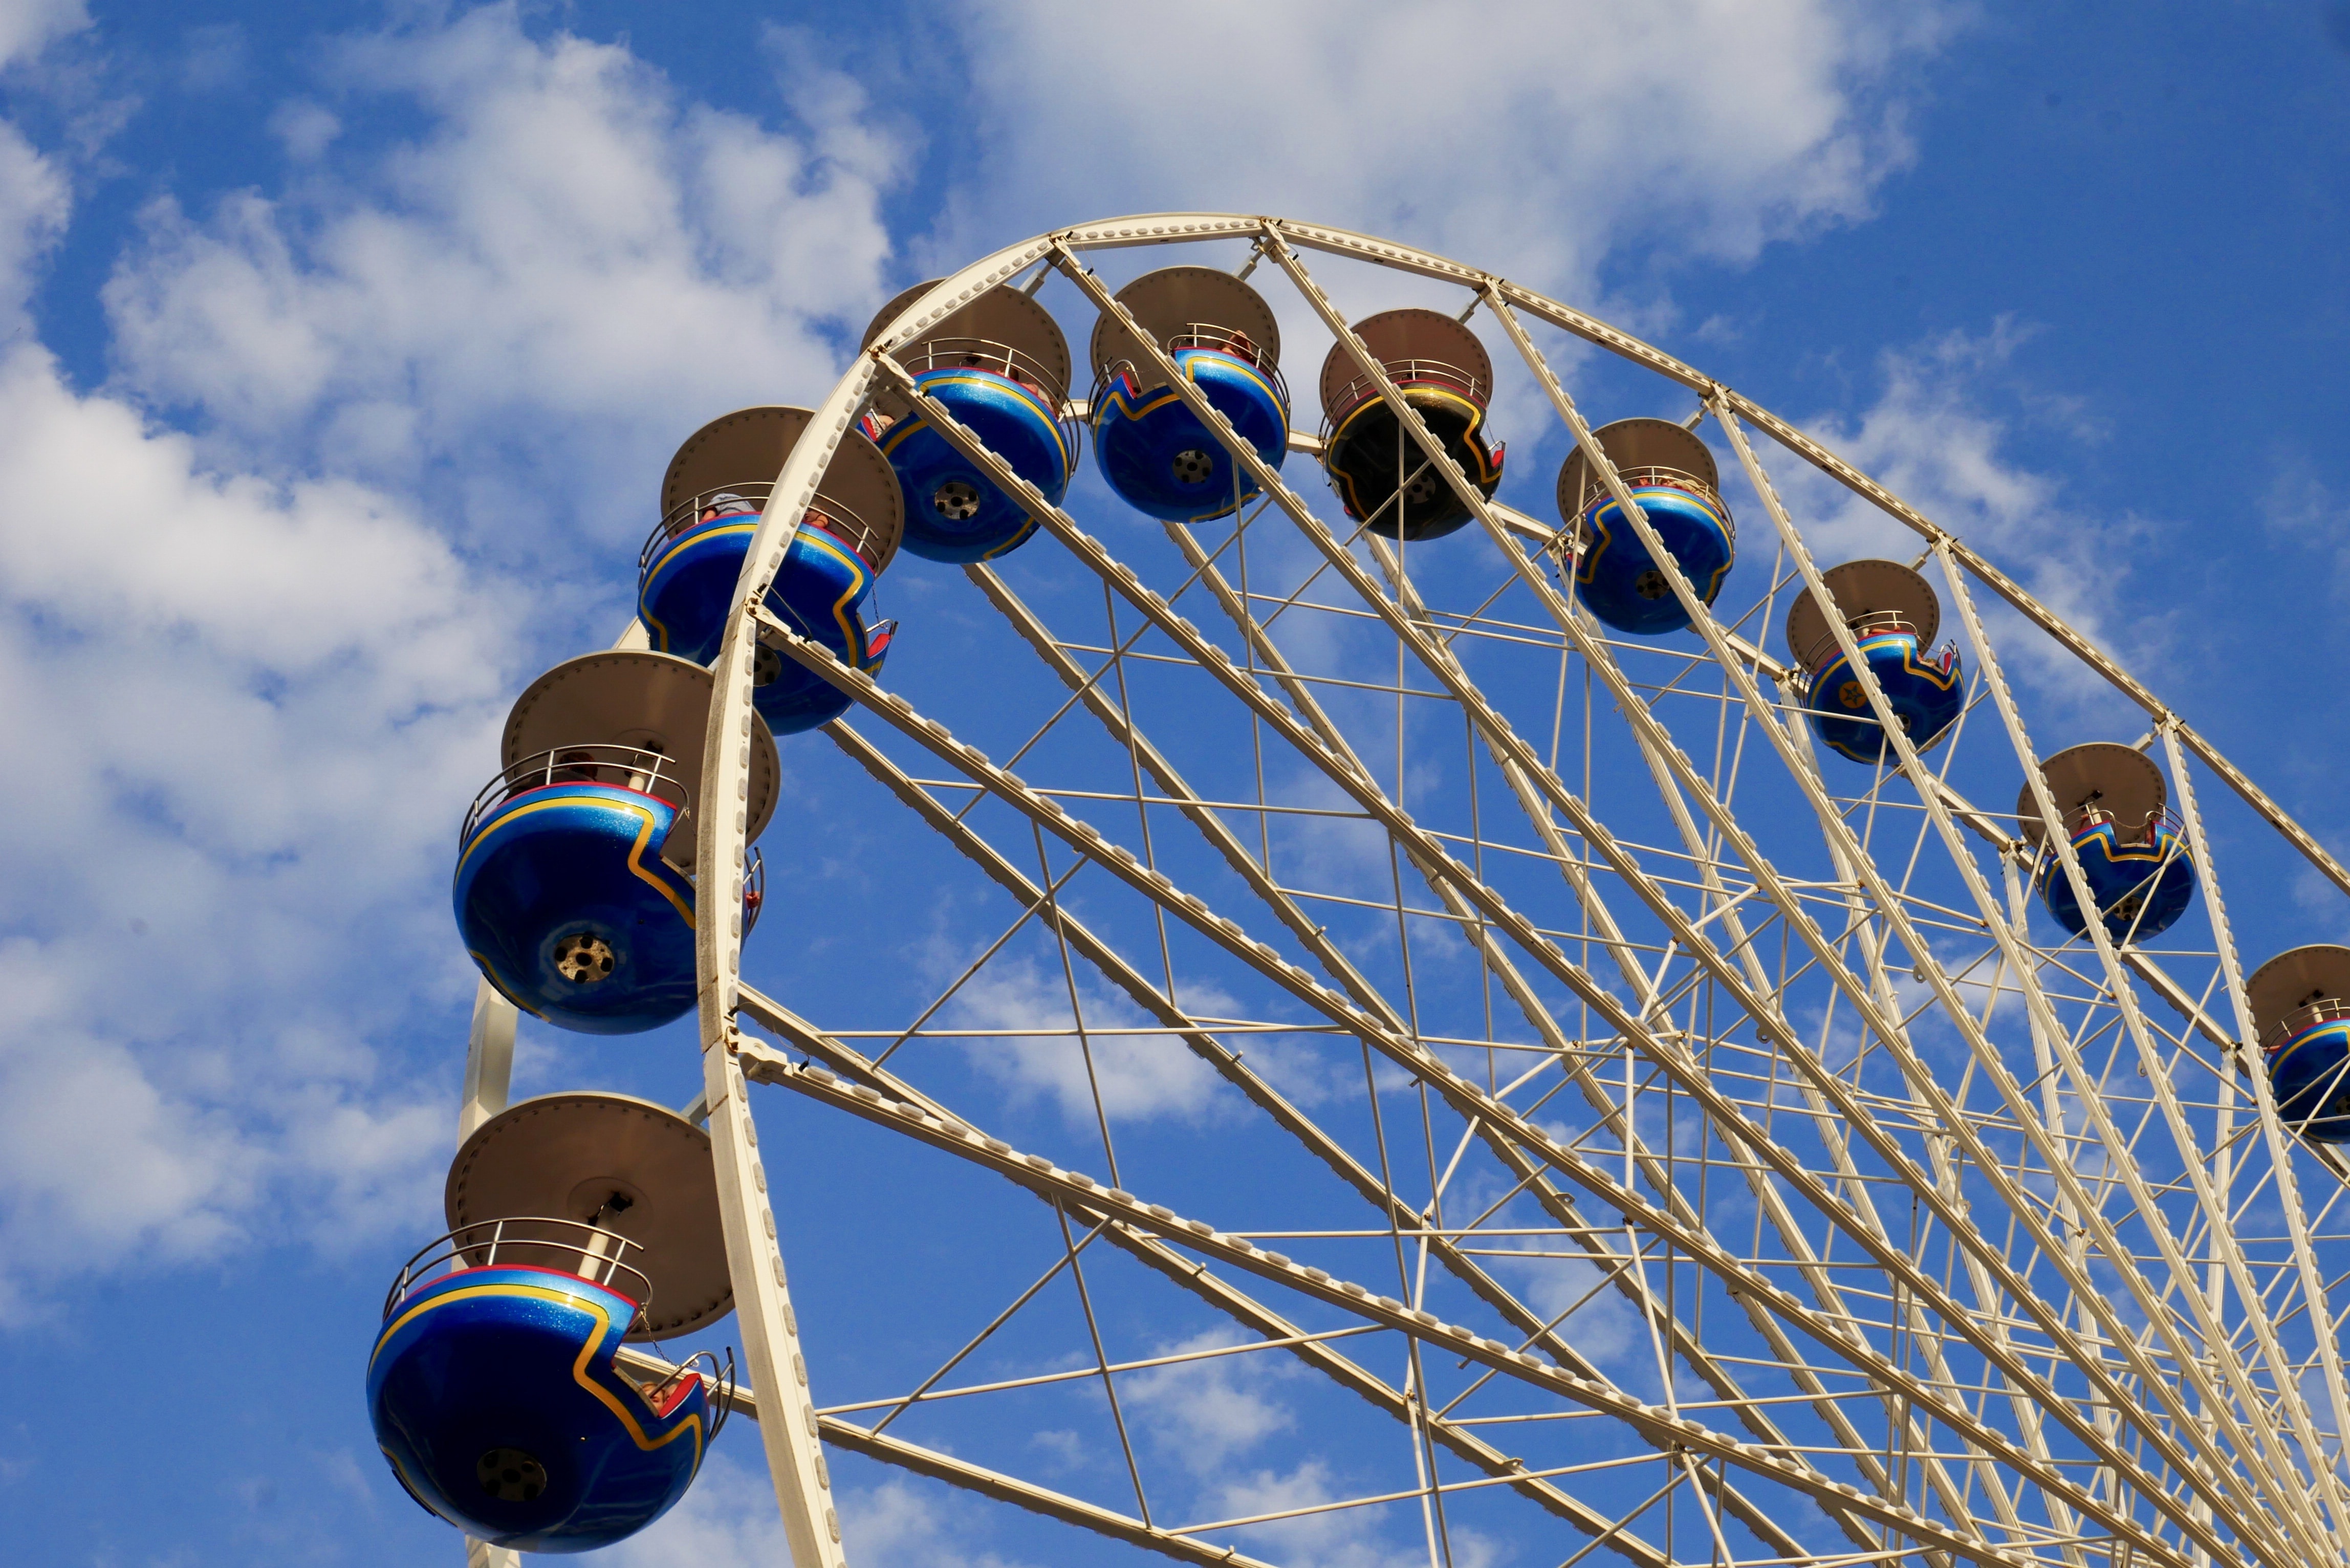 Ferris Wheel, Funfair, Clouds, Fun, View, arts culture and entertainment, ferris wheel